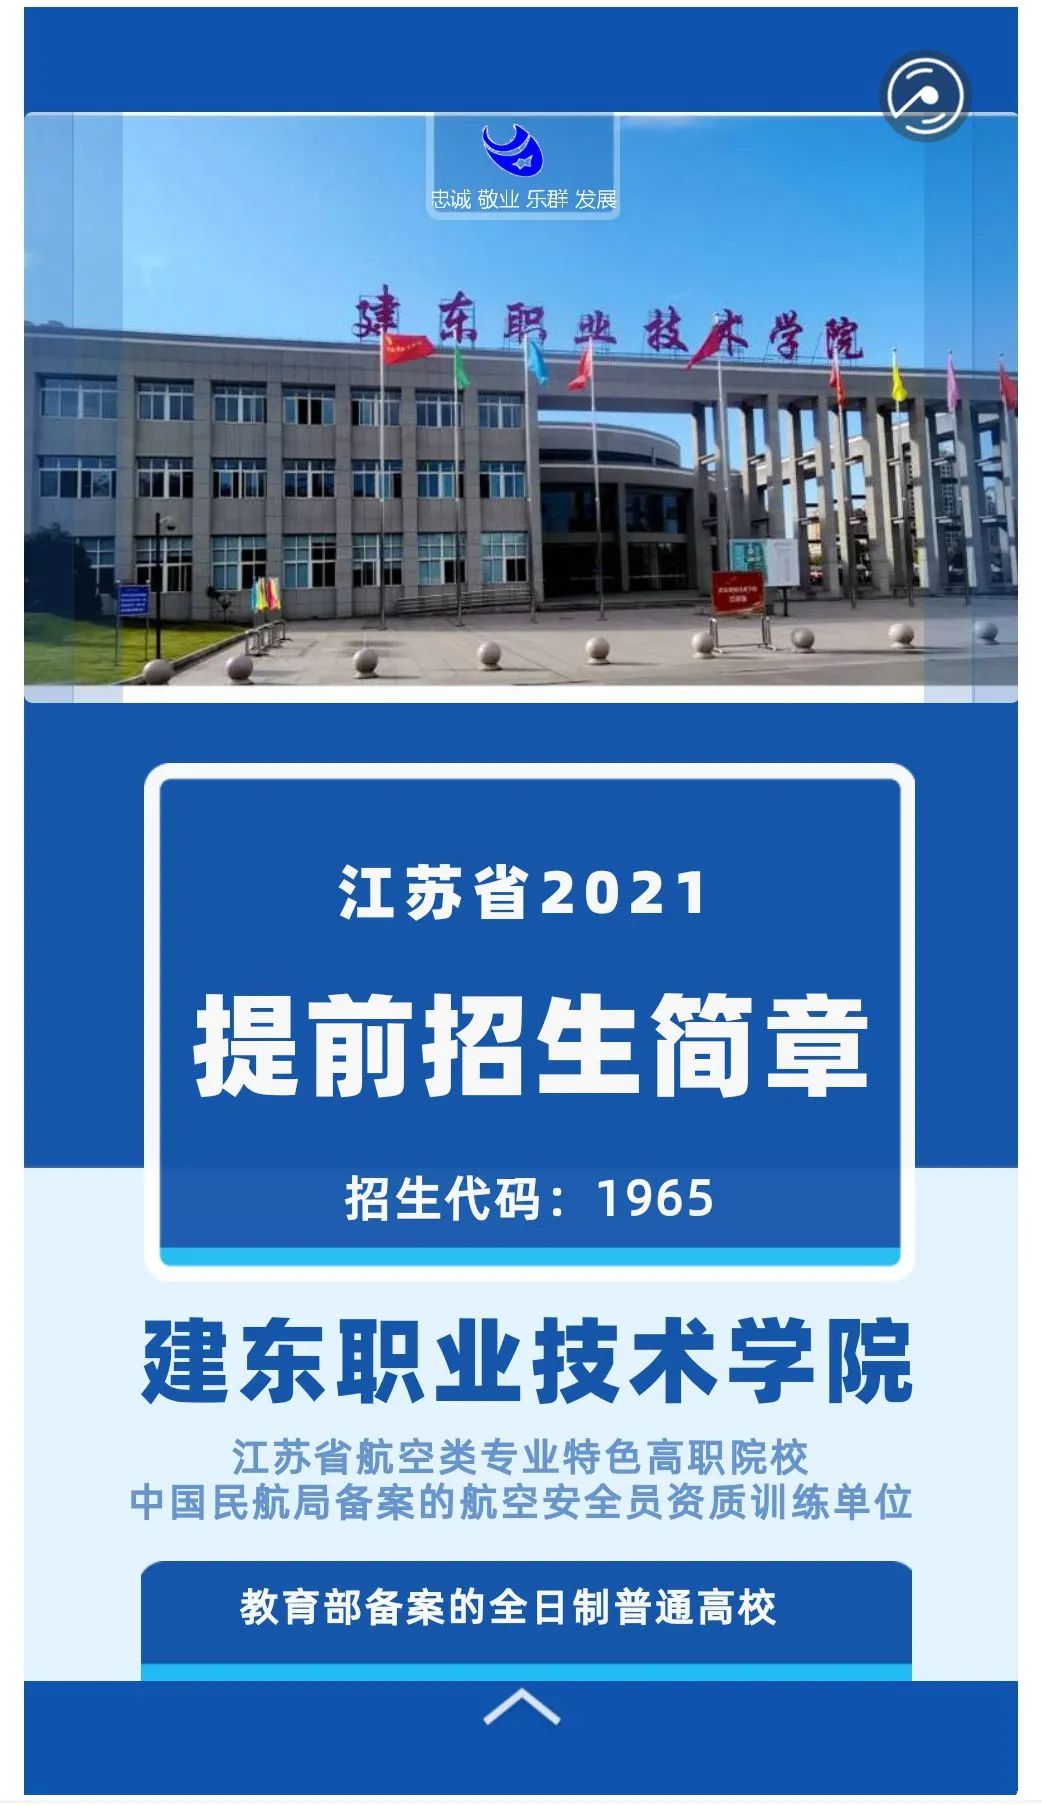 建东职业技术学院2021年提前招生简章